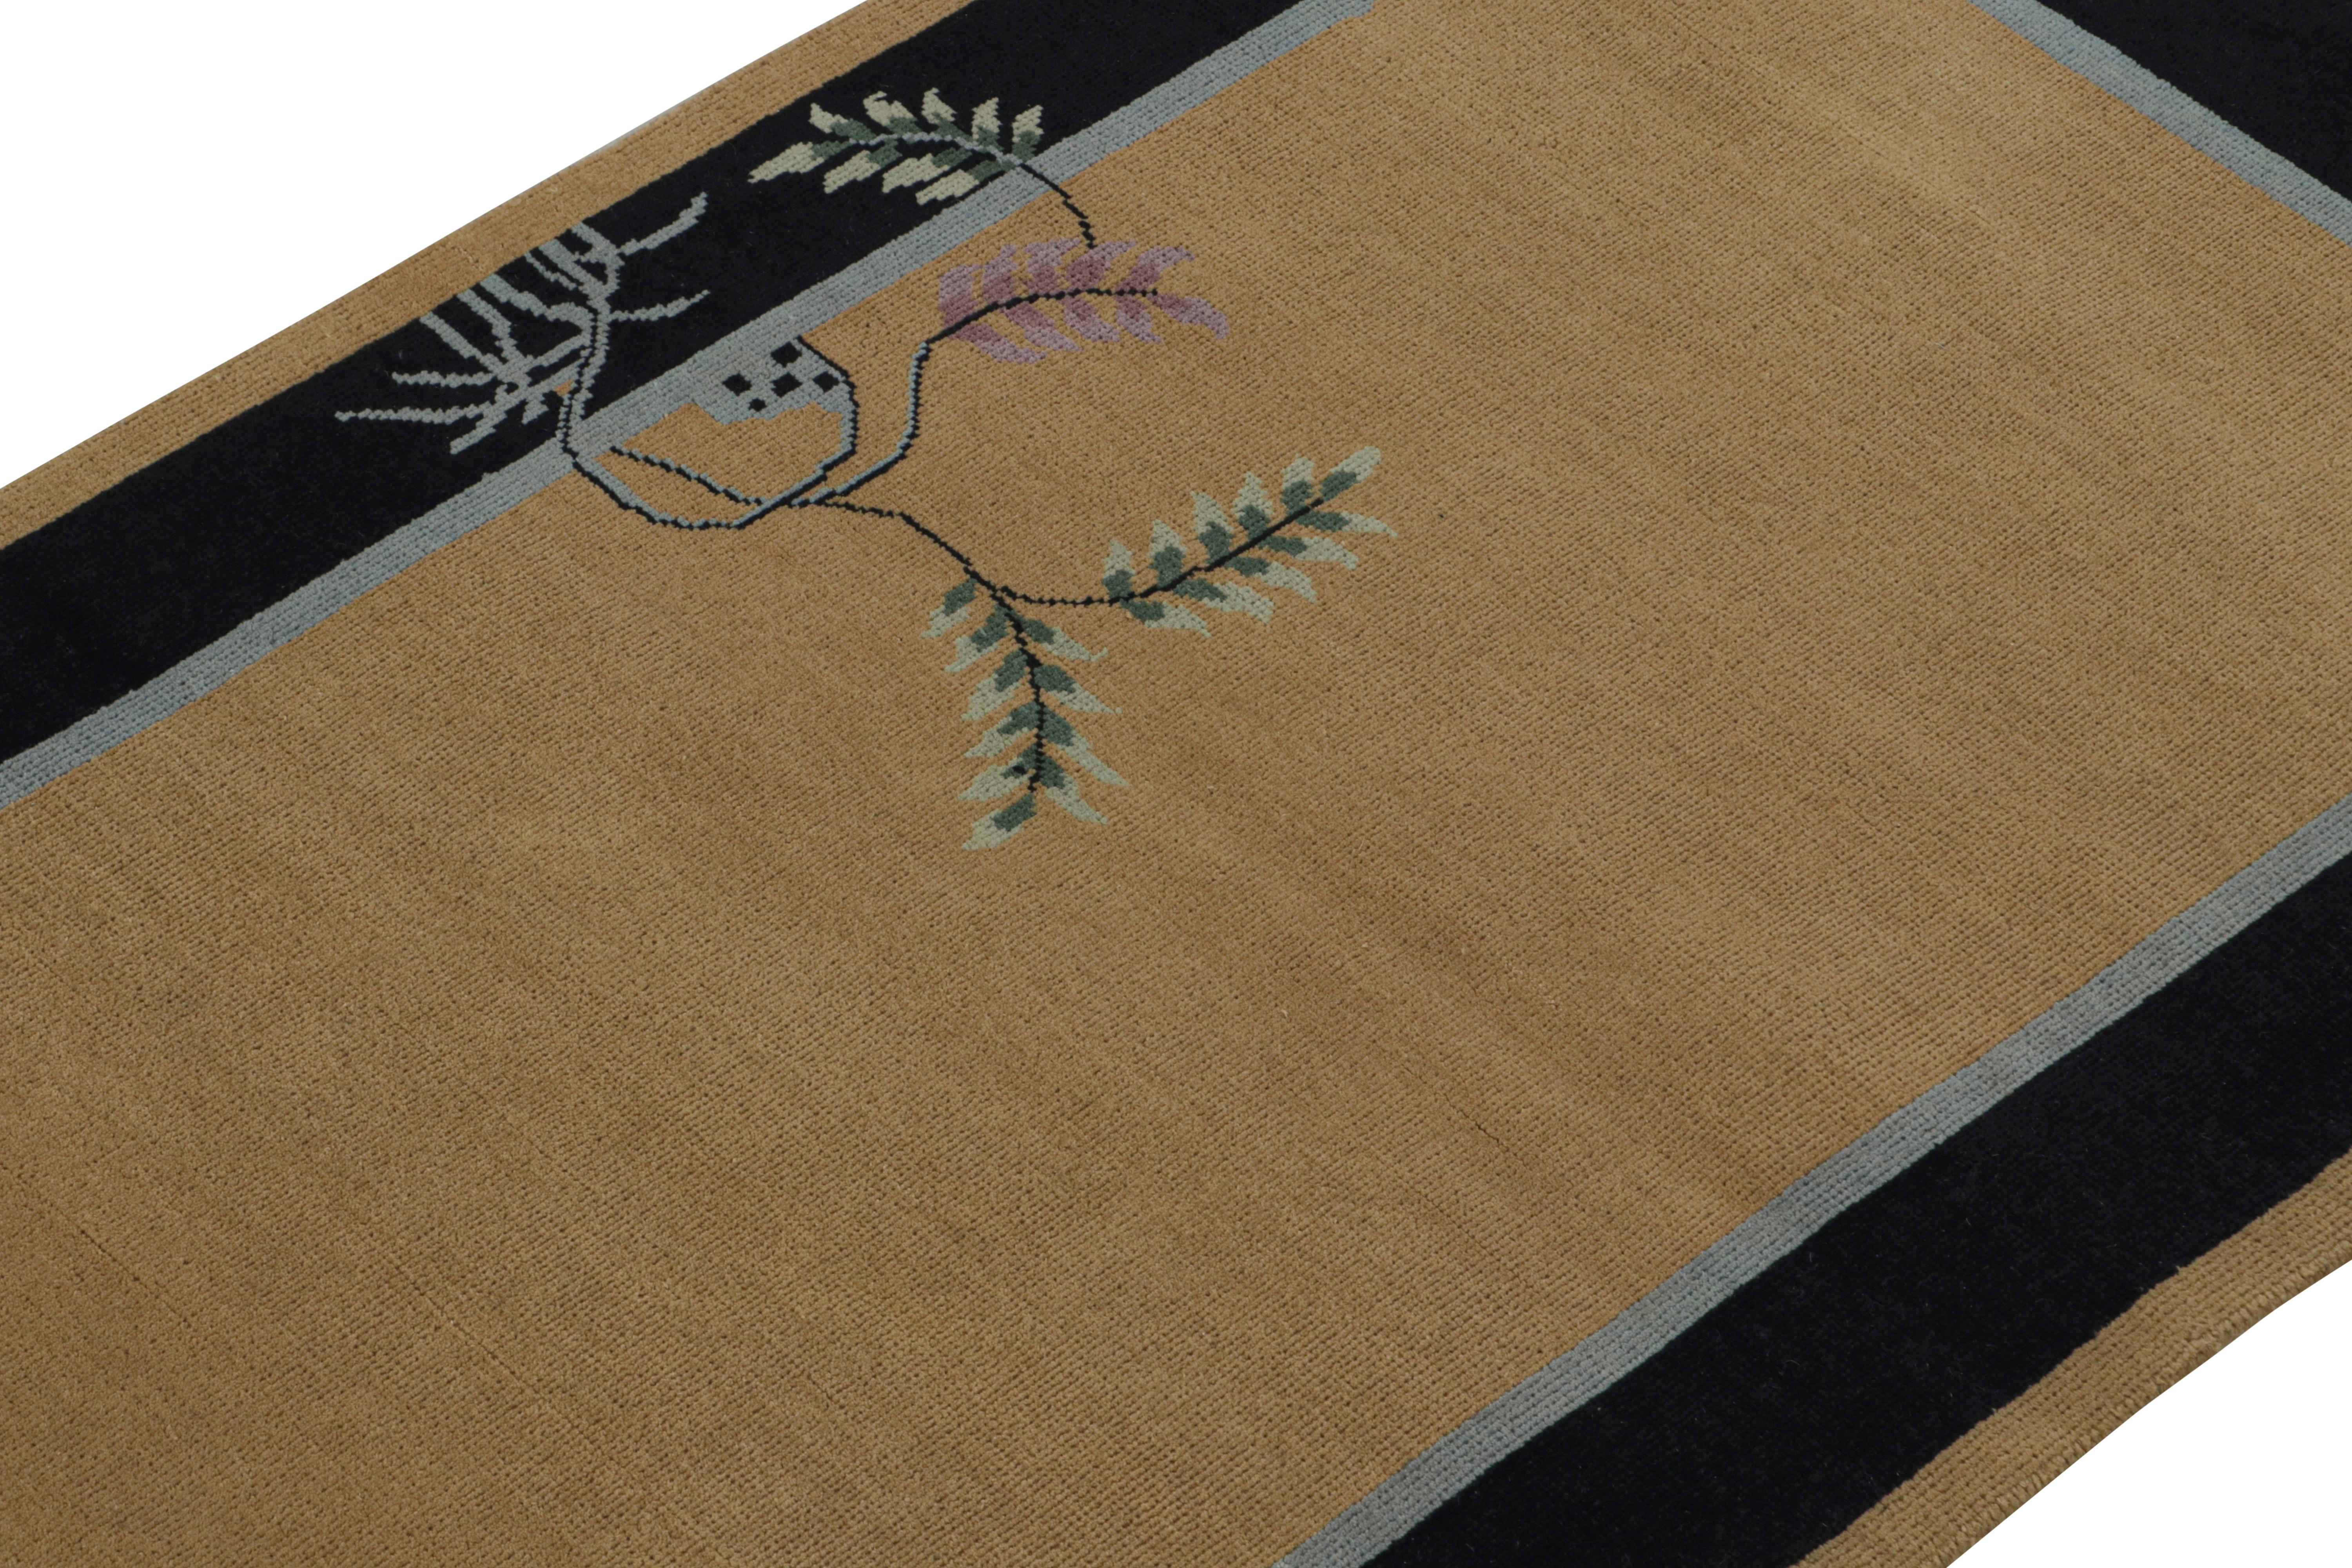 Dieser 3x5-Teppich ist eine aufregende Neuheit in der Art Deco-Kollektion von Rug & Kilim.  

Über das Design: 

Dieser handgeknüpfte Wollteppich ist eine Neuinterpretation des chinesischen Art-Déco-Stils der 1920er Jahre. Sein minimalistisches